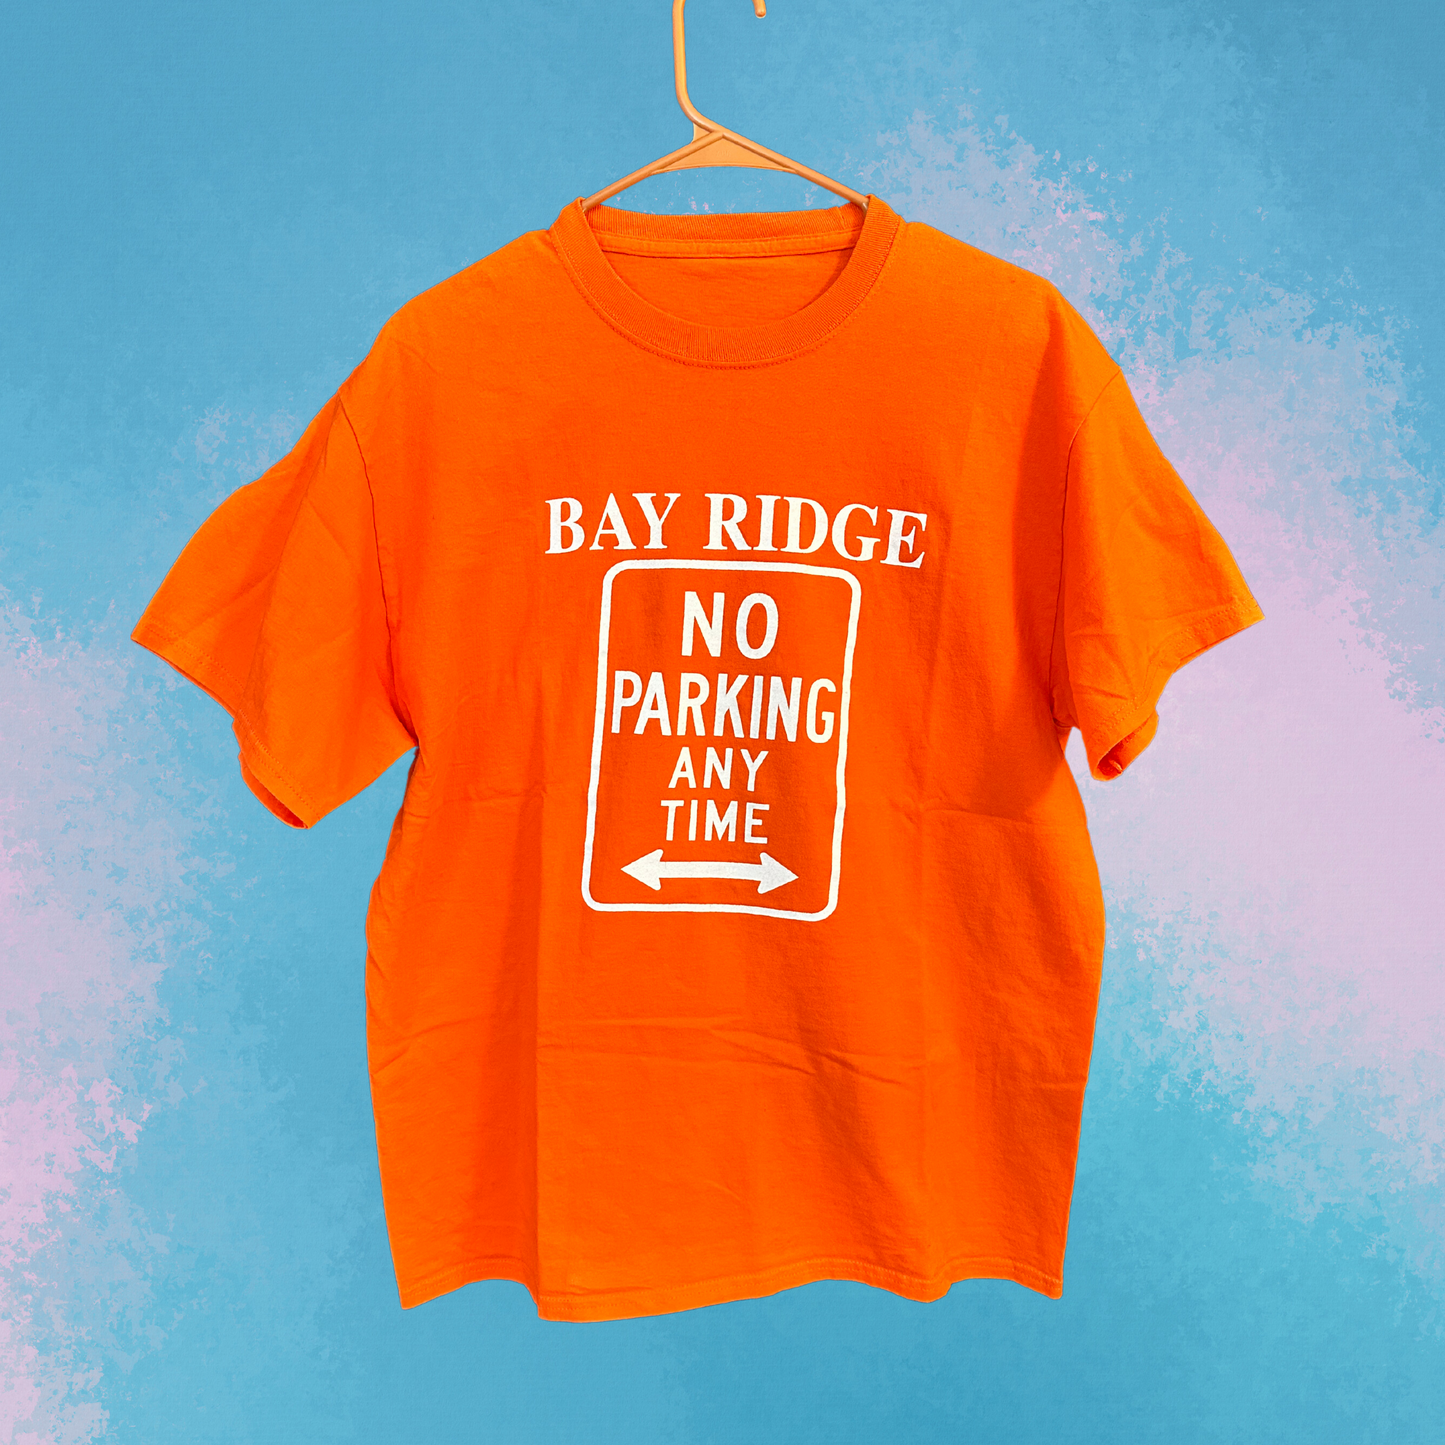 Bay Ridge geen parkeer-T-shirt